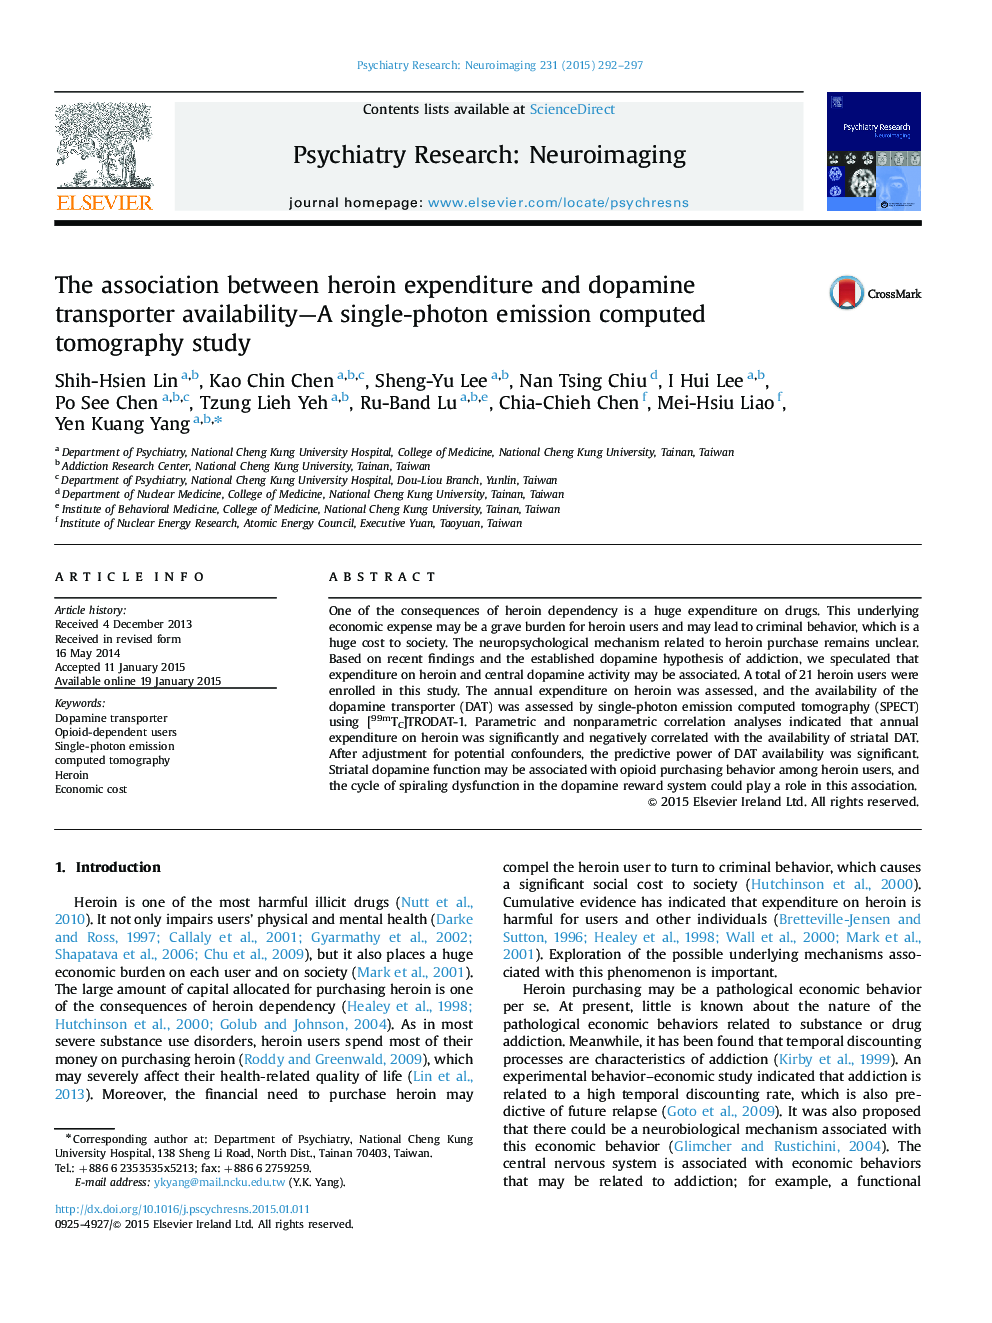 ارتباط هزینه هروئین و در دسترس بودن دوپامین ترانسفورماتور- مطالعه یک توموگرافی محسوب می شود 